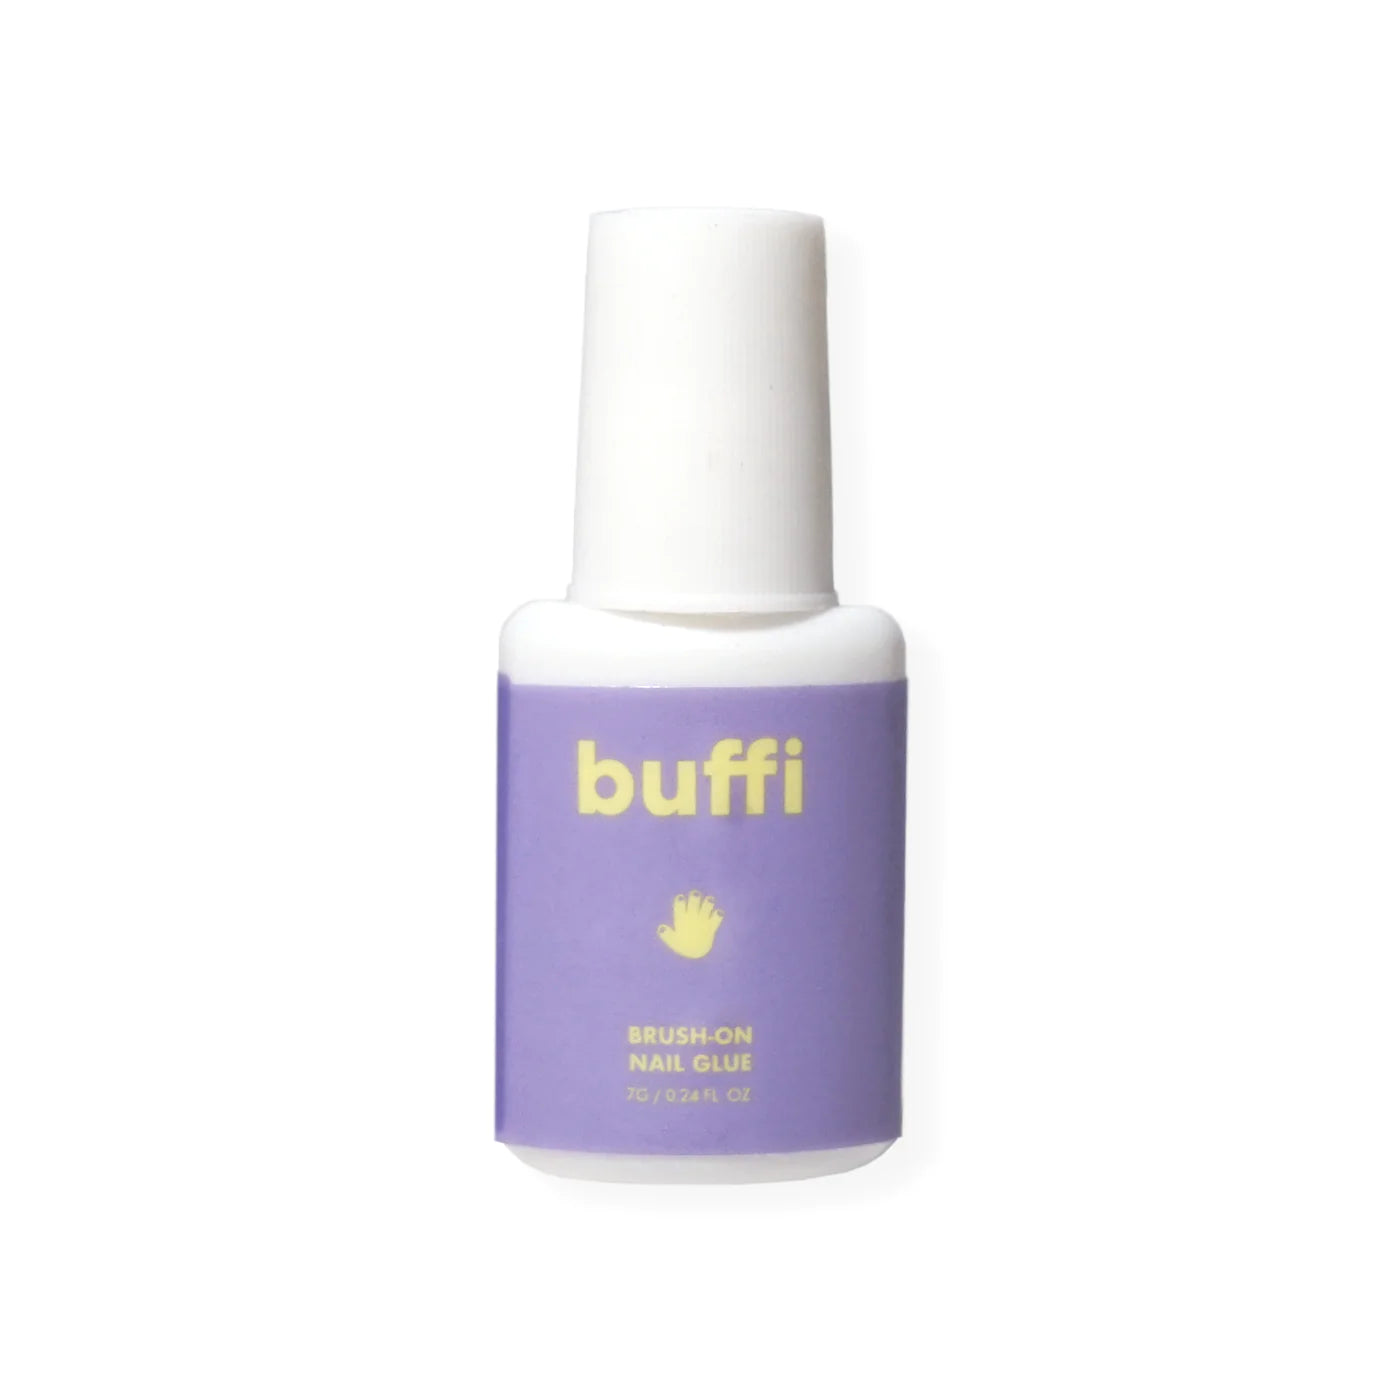 buffi_glue_product.webp